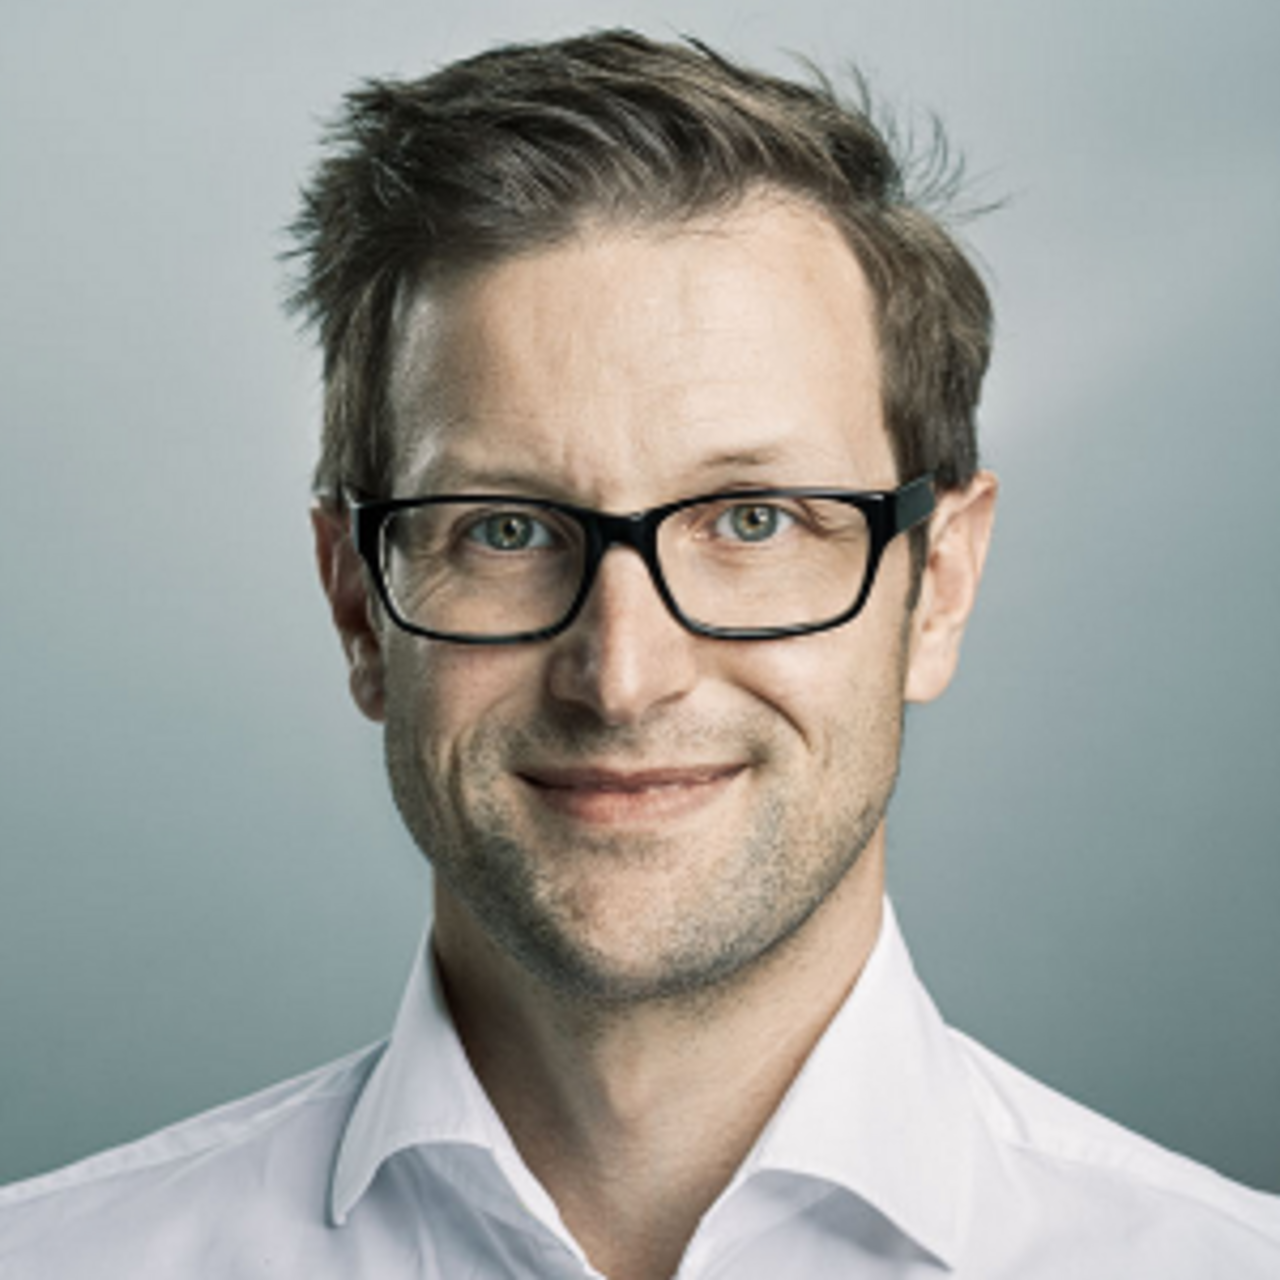 PD Dr méd. Andreas Ficklscherer - Portrait